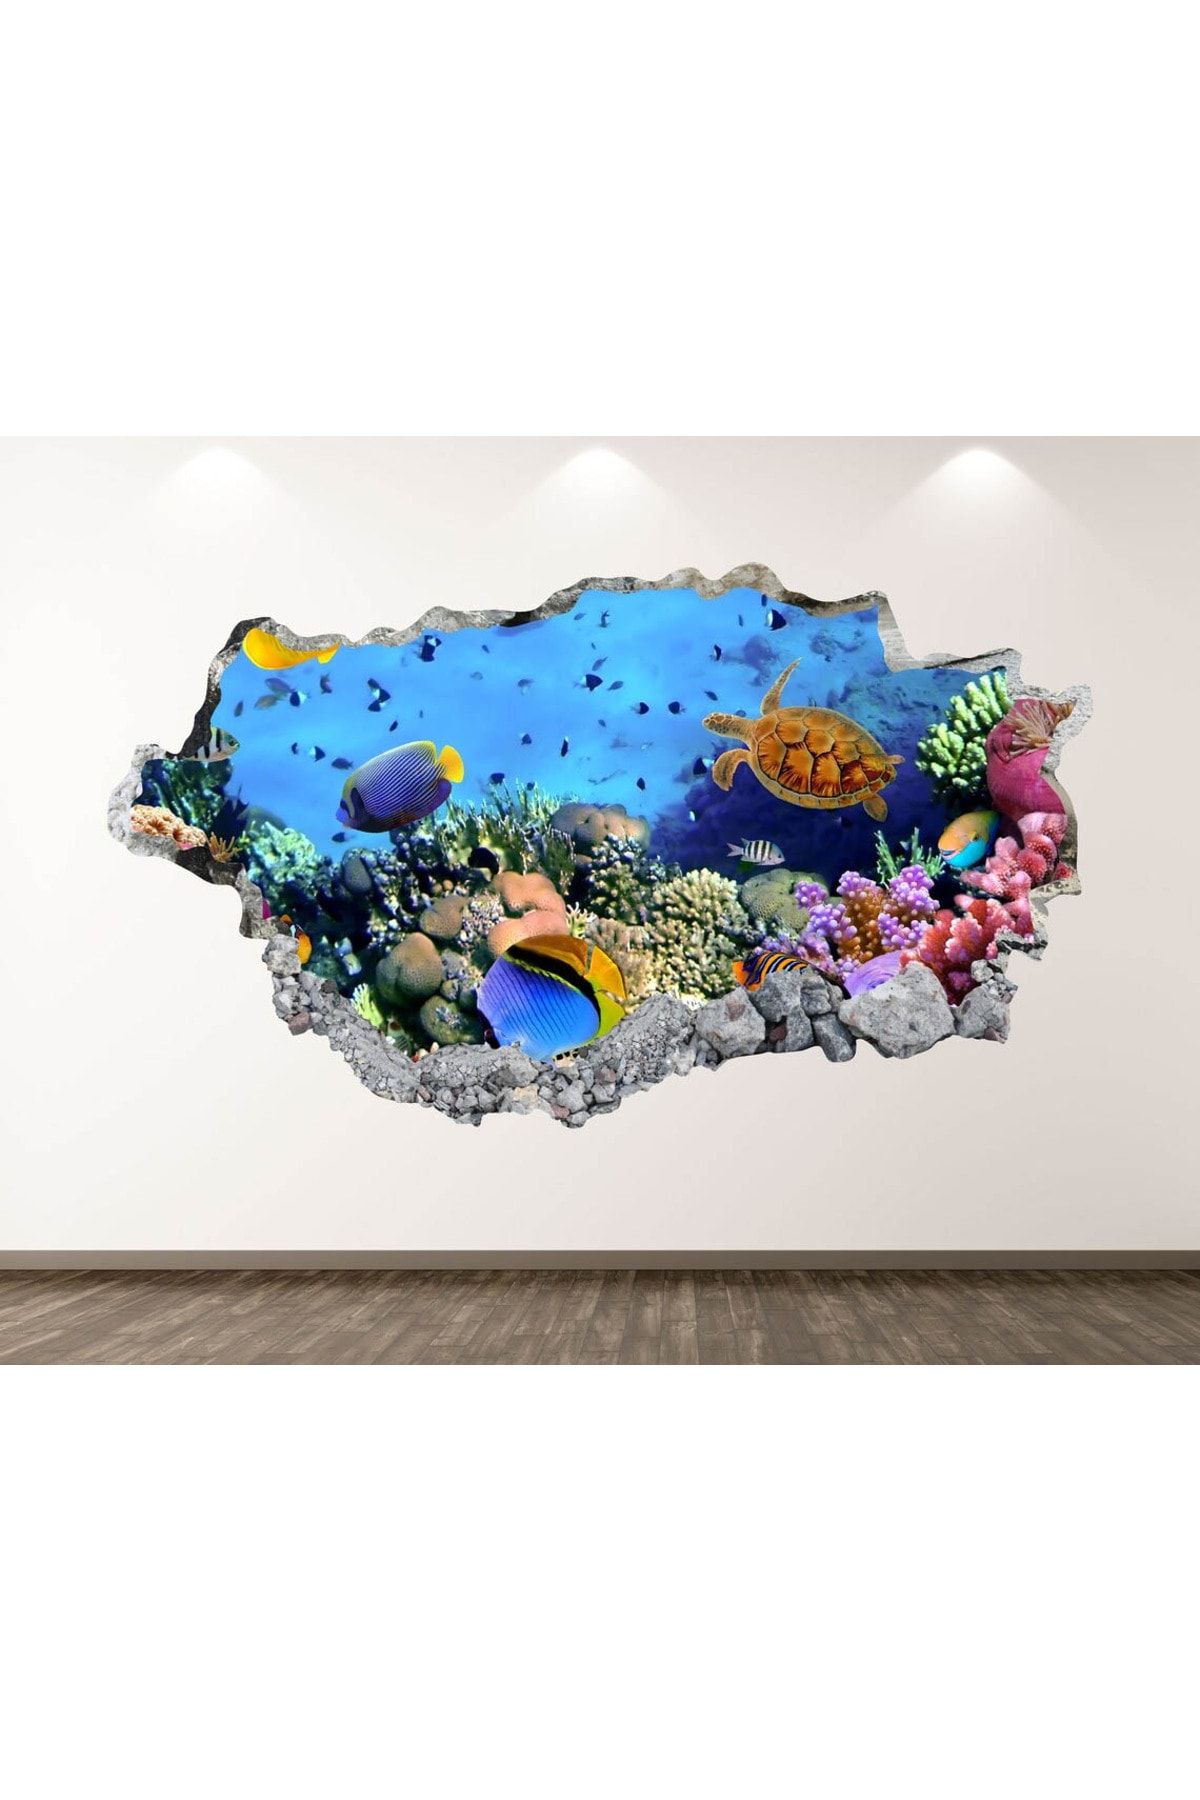 Kt Grup Büyük Akvaryum Balıklar ve Deniz Canlıları Full Hd Baskı 3d Duvar Sticker